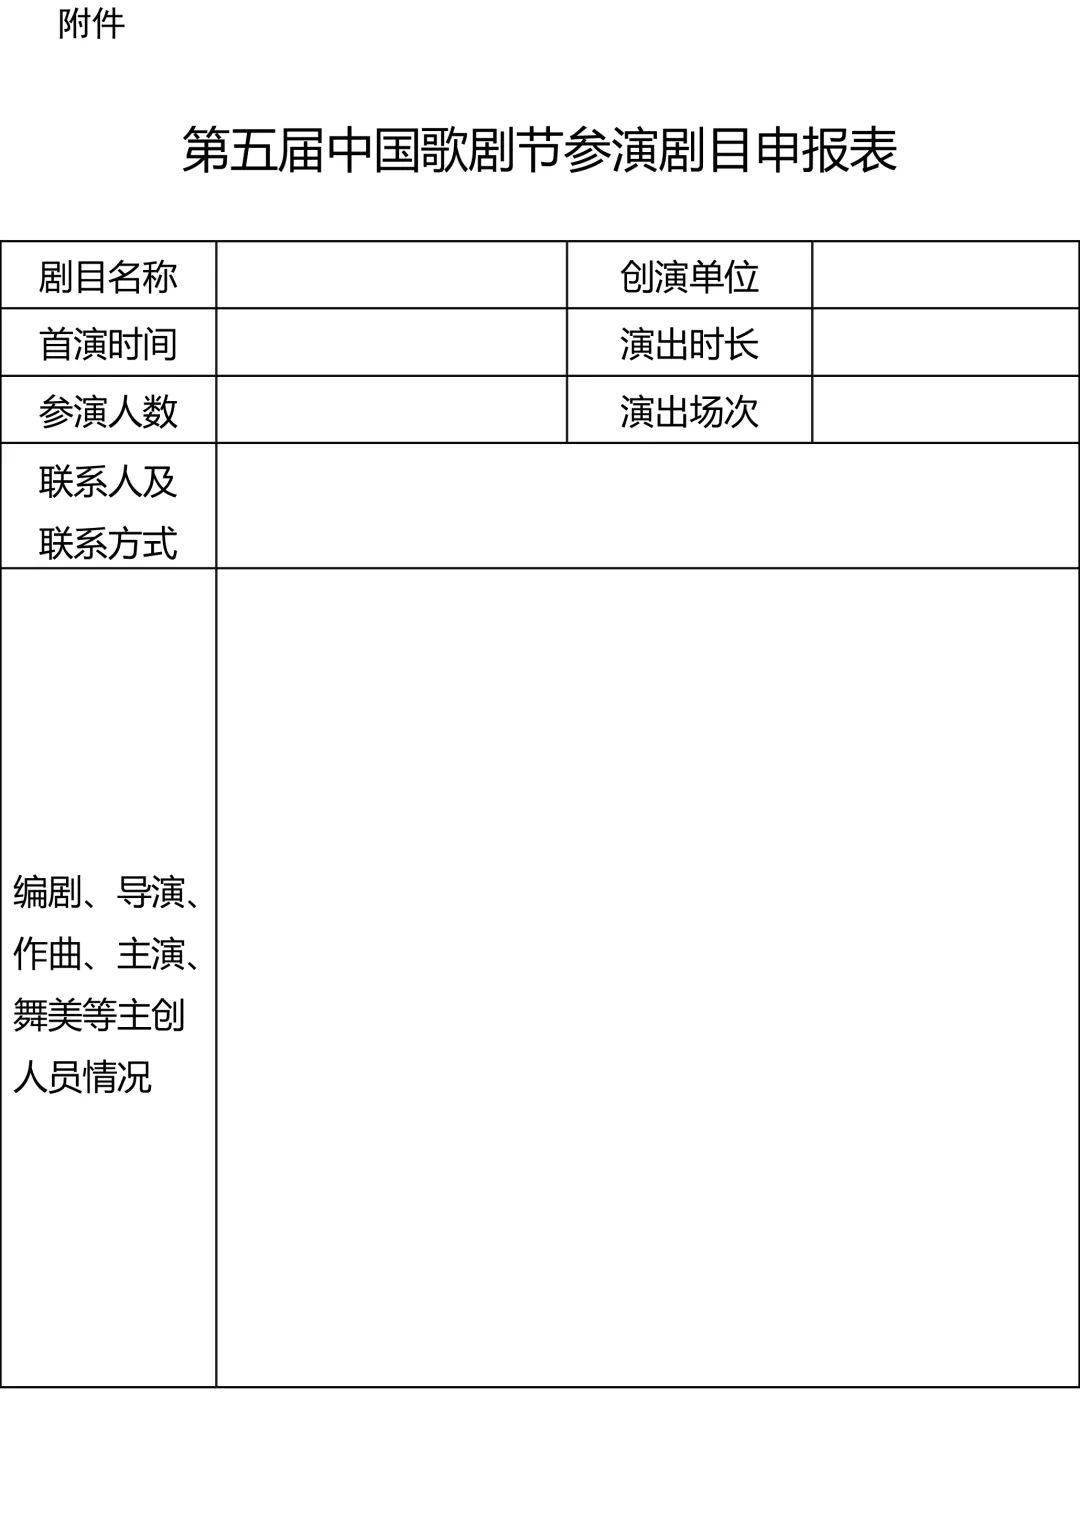 小苹果版中国行政:头条 | 文化和旅游部办公厅关于举办第五届中国歌剧节的通知